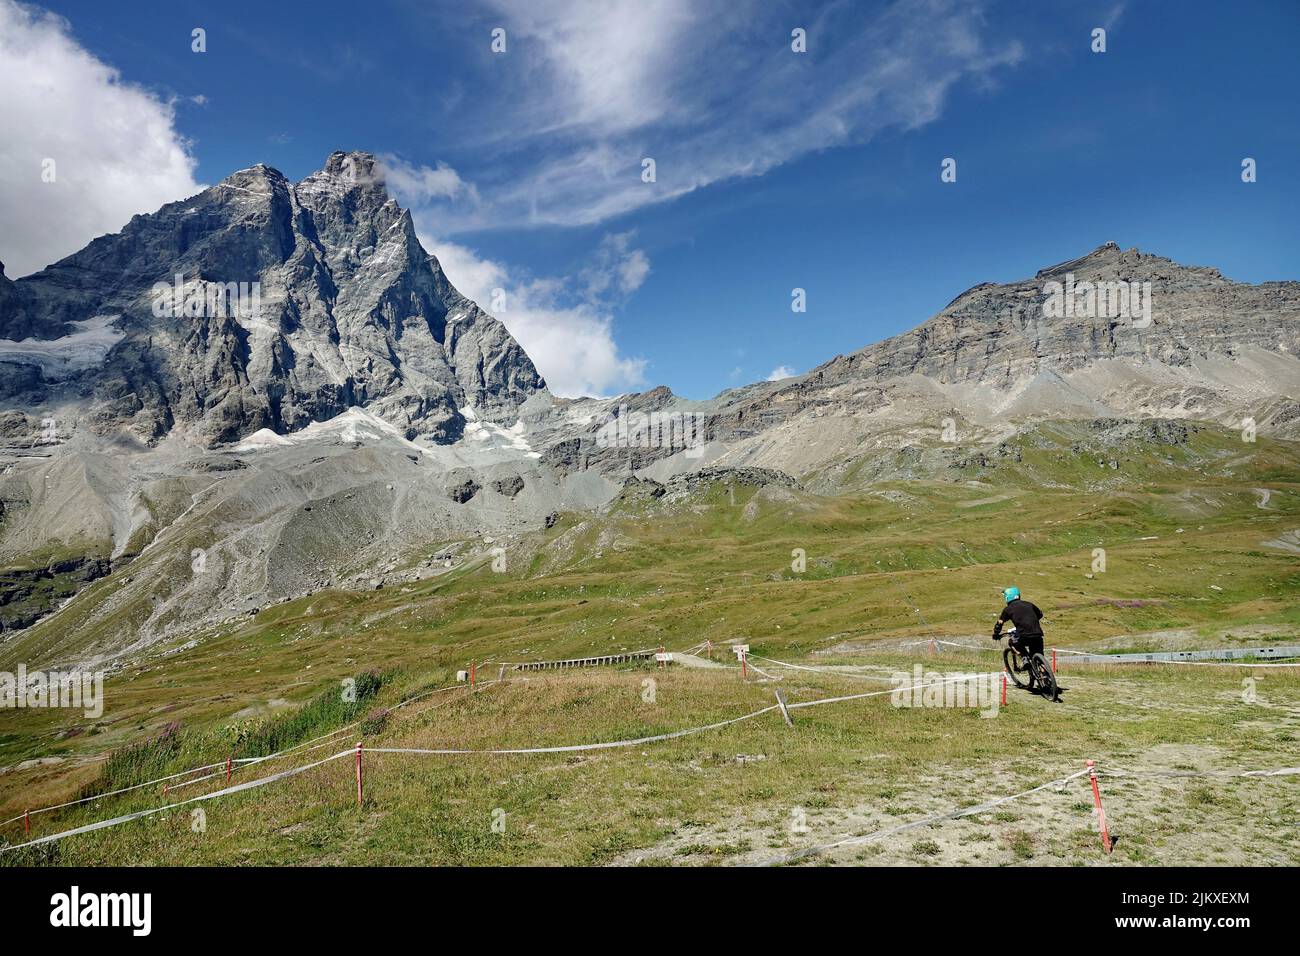 Der Bikepark Matterhorn Valley ist der höchste Europas und bietet Pisten aller Schwierigkeitsgrade. Breuil-Cervinia, Italien - August 2022 Stockfoto